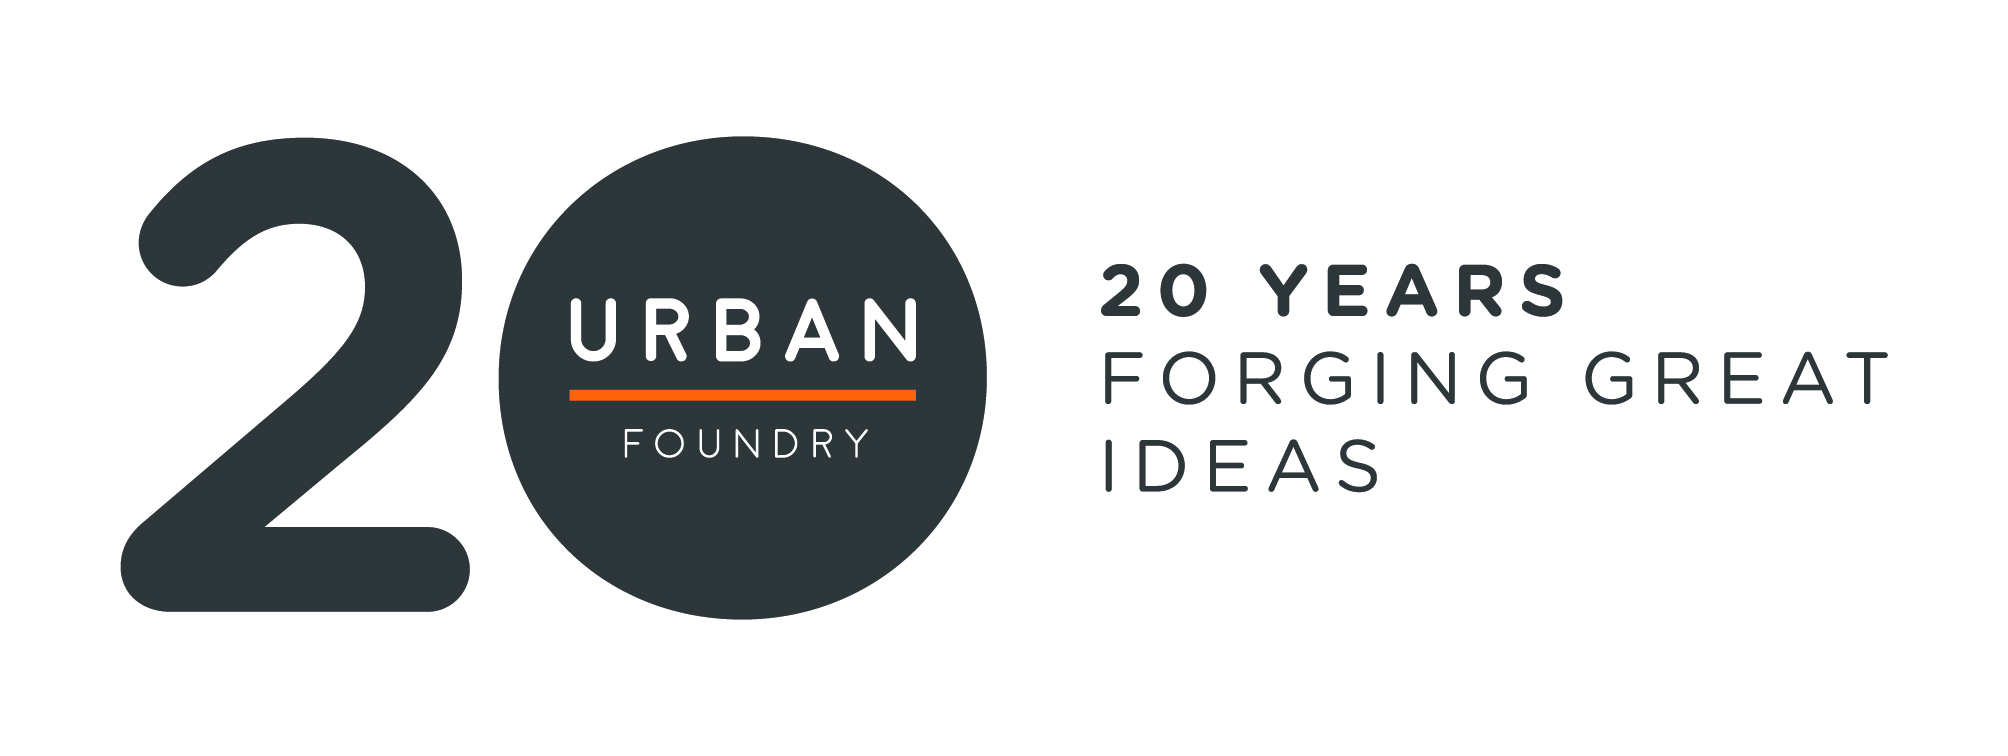 Urban Foundry 20 Anniversary Logo